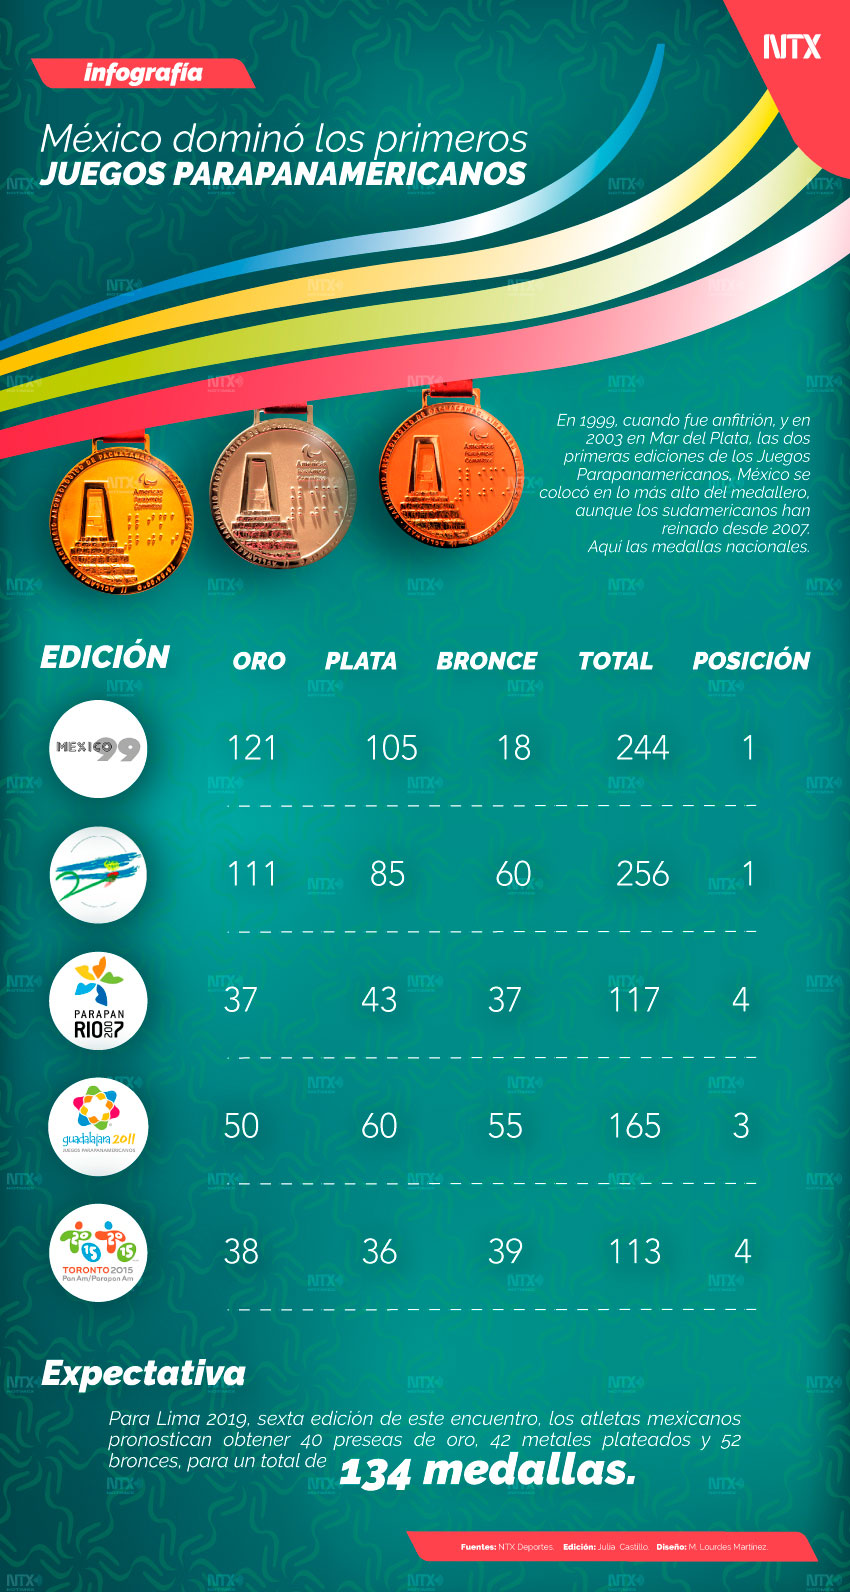 Mxico domin los primeros Juegos Parapanamericanos